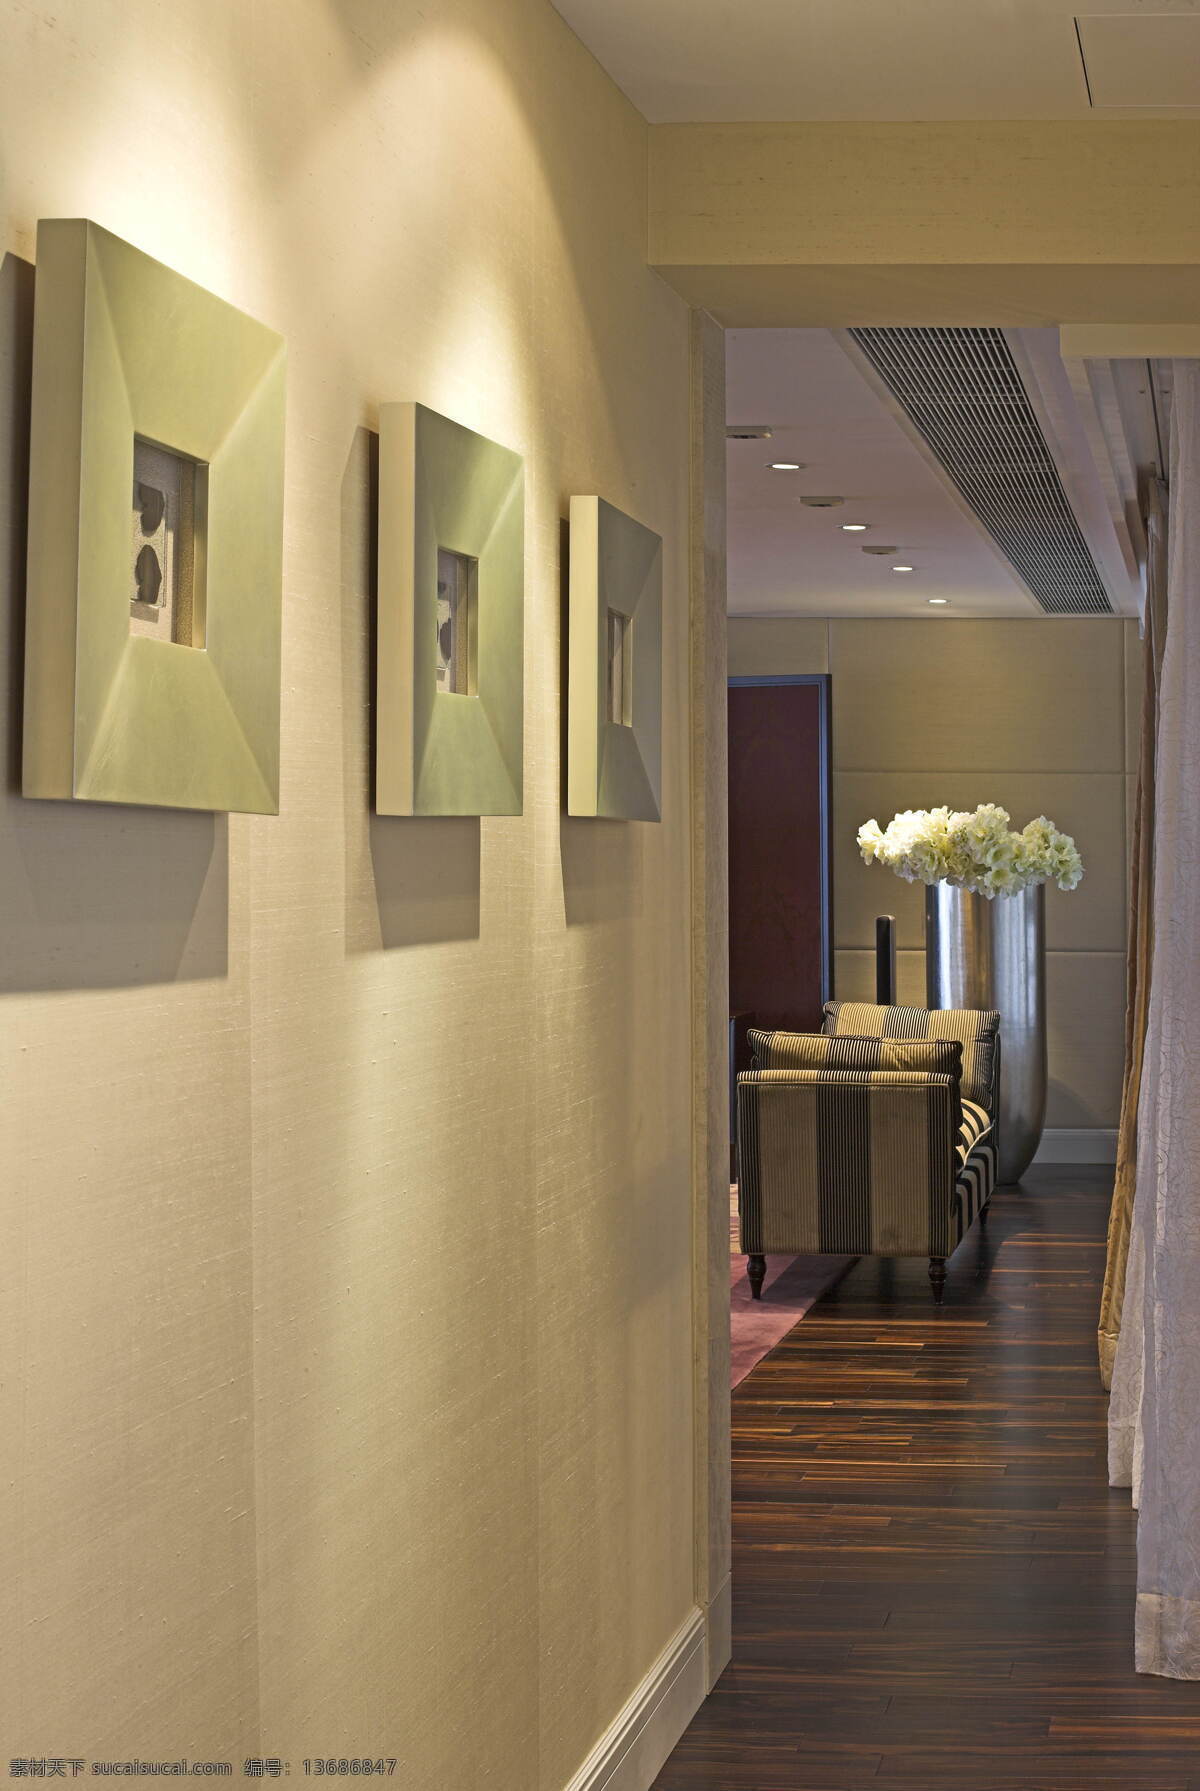 室内 客厅 环境 3d 效果图 3d渲染图 室内客厅环境 高清 渲染 图 家居装饰素材 室内设计